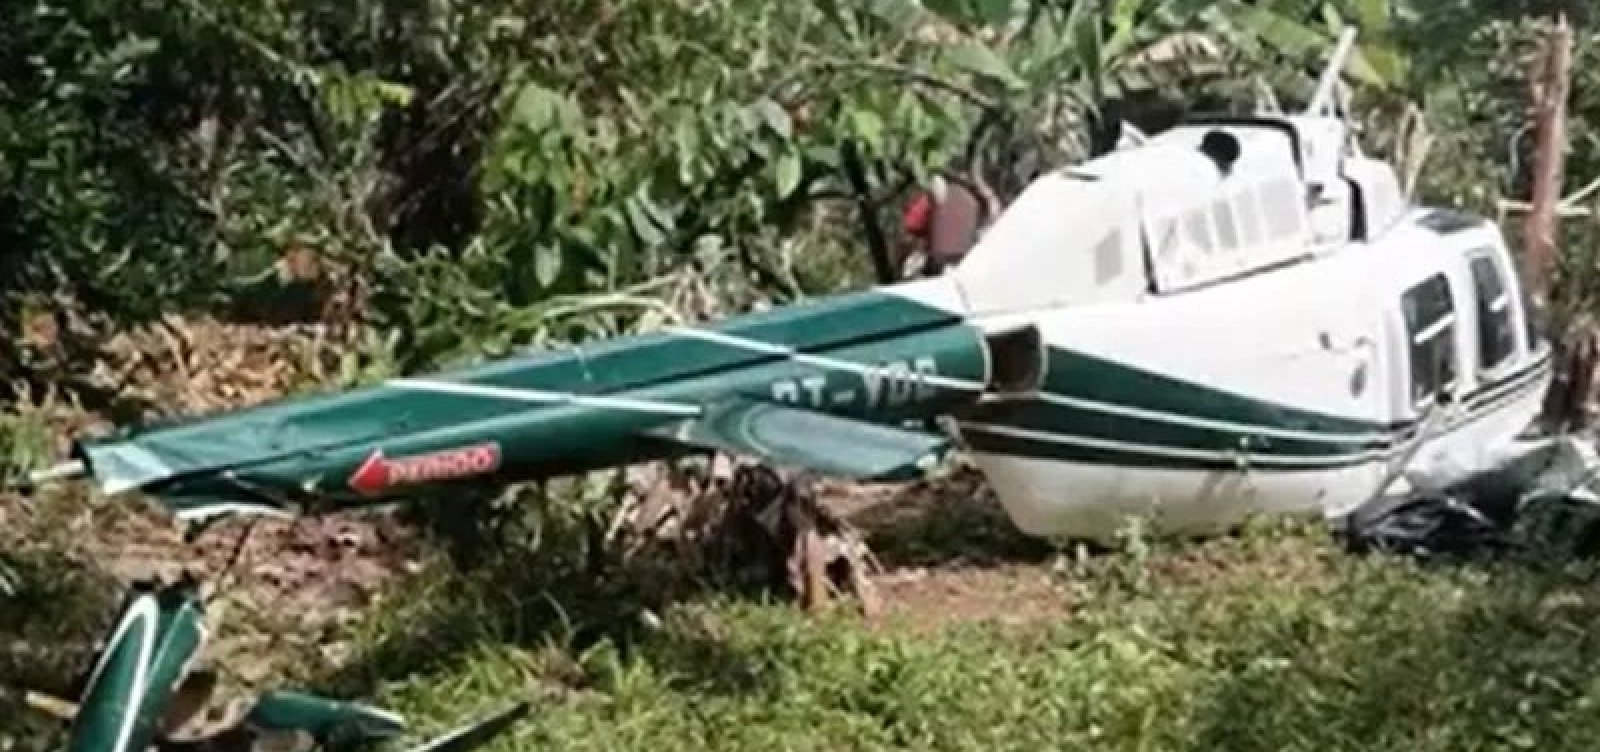 Com duas pessoas a bordo, helicóptero cai em zona rural de Itacaré